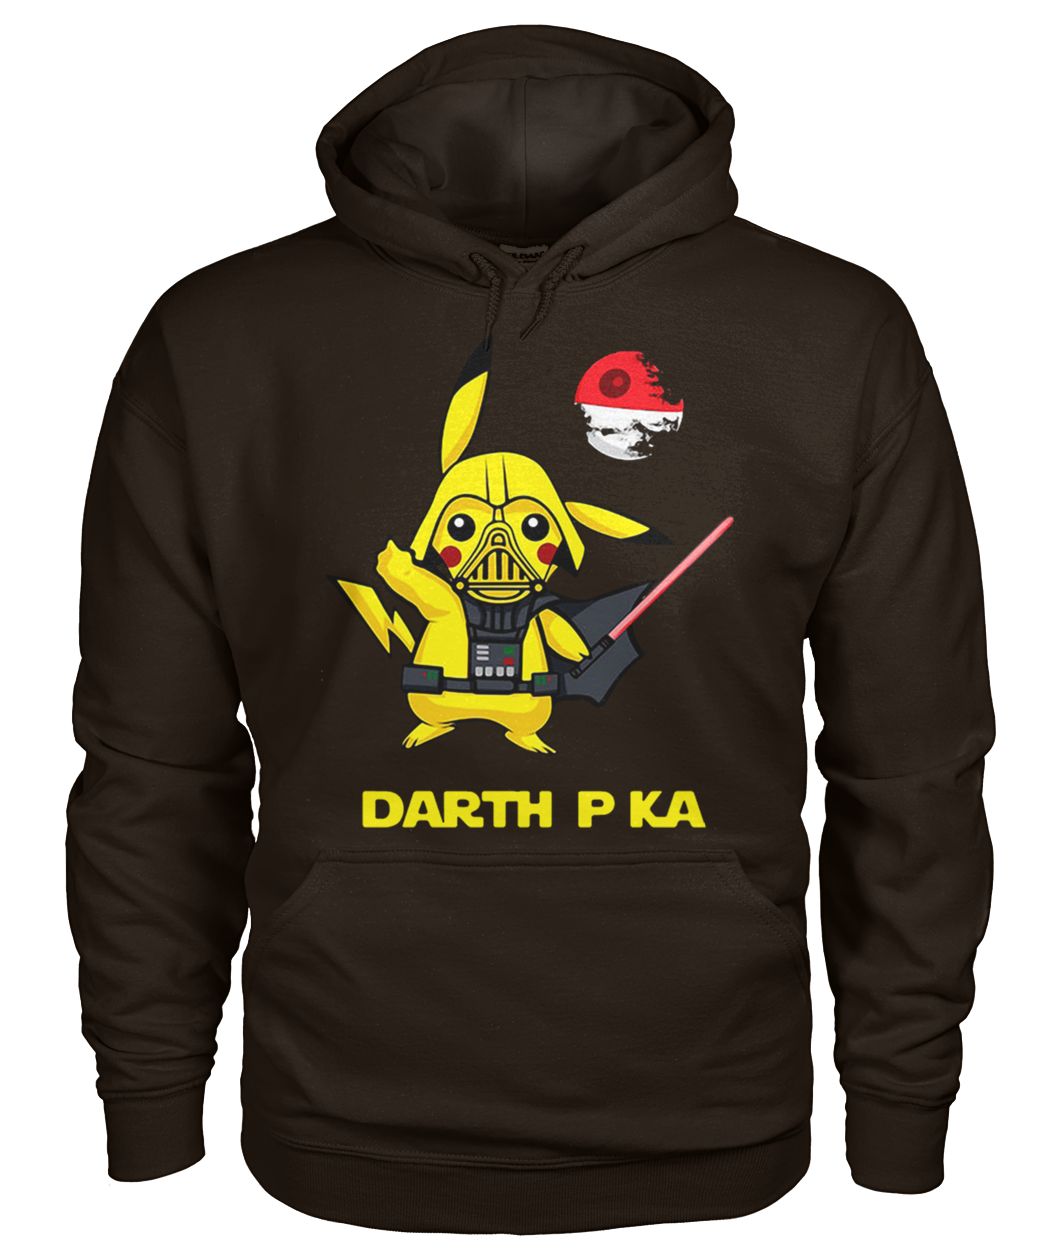 Pikachu cosplay darth vader star wars gildan hoodie